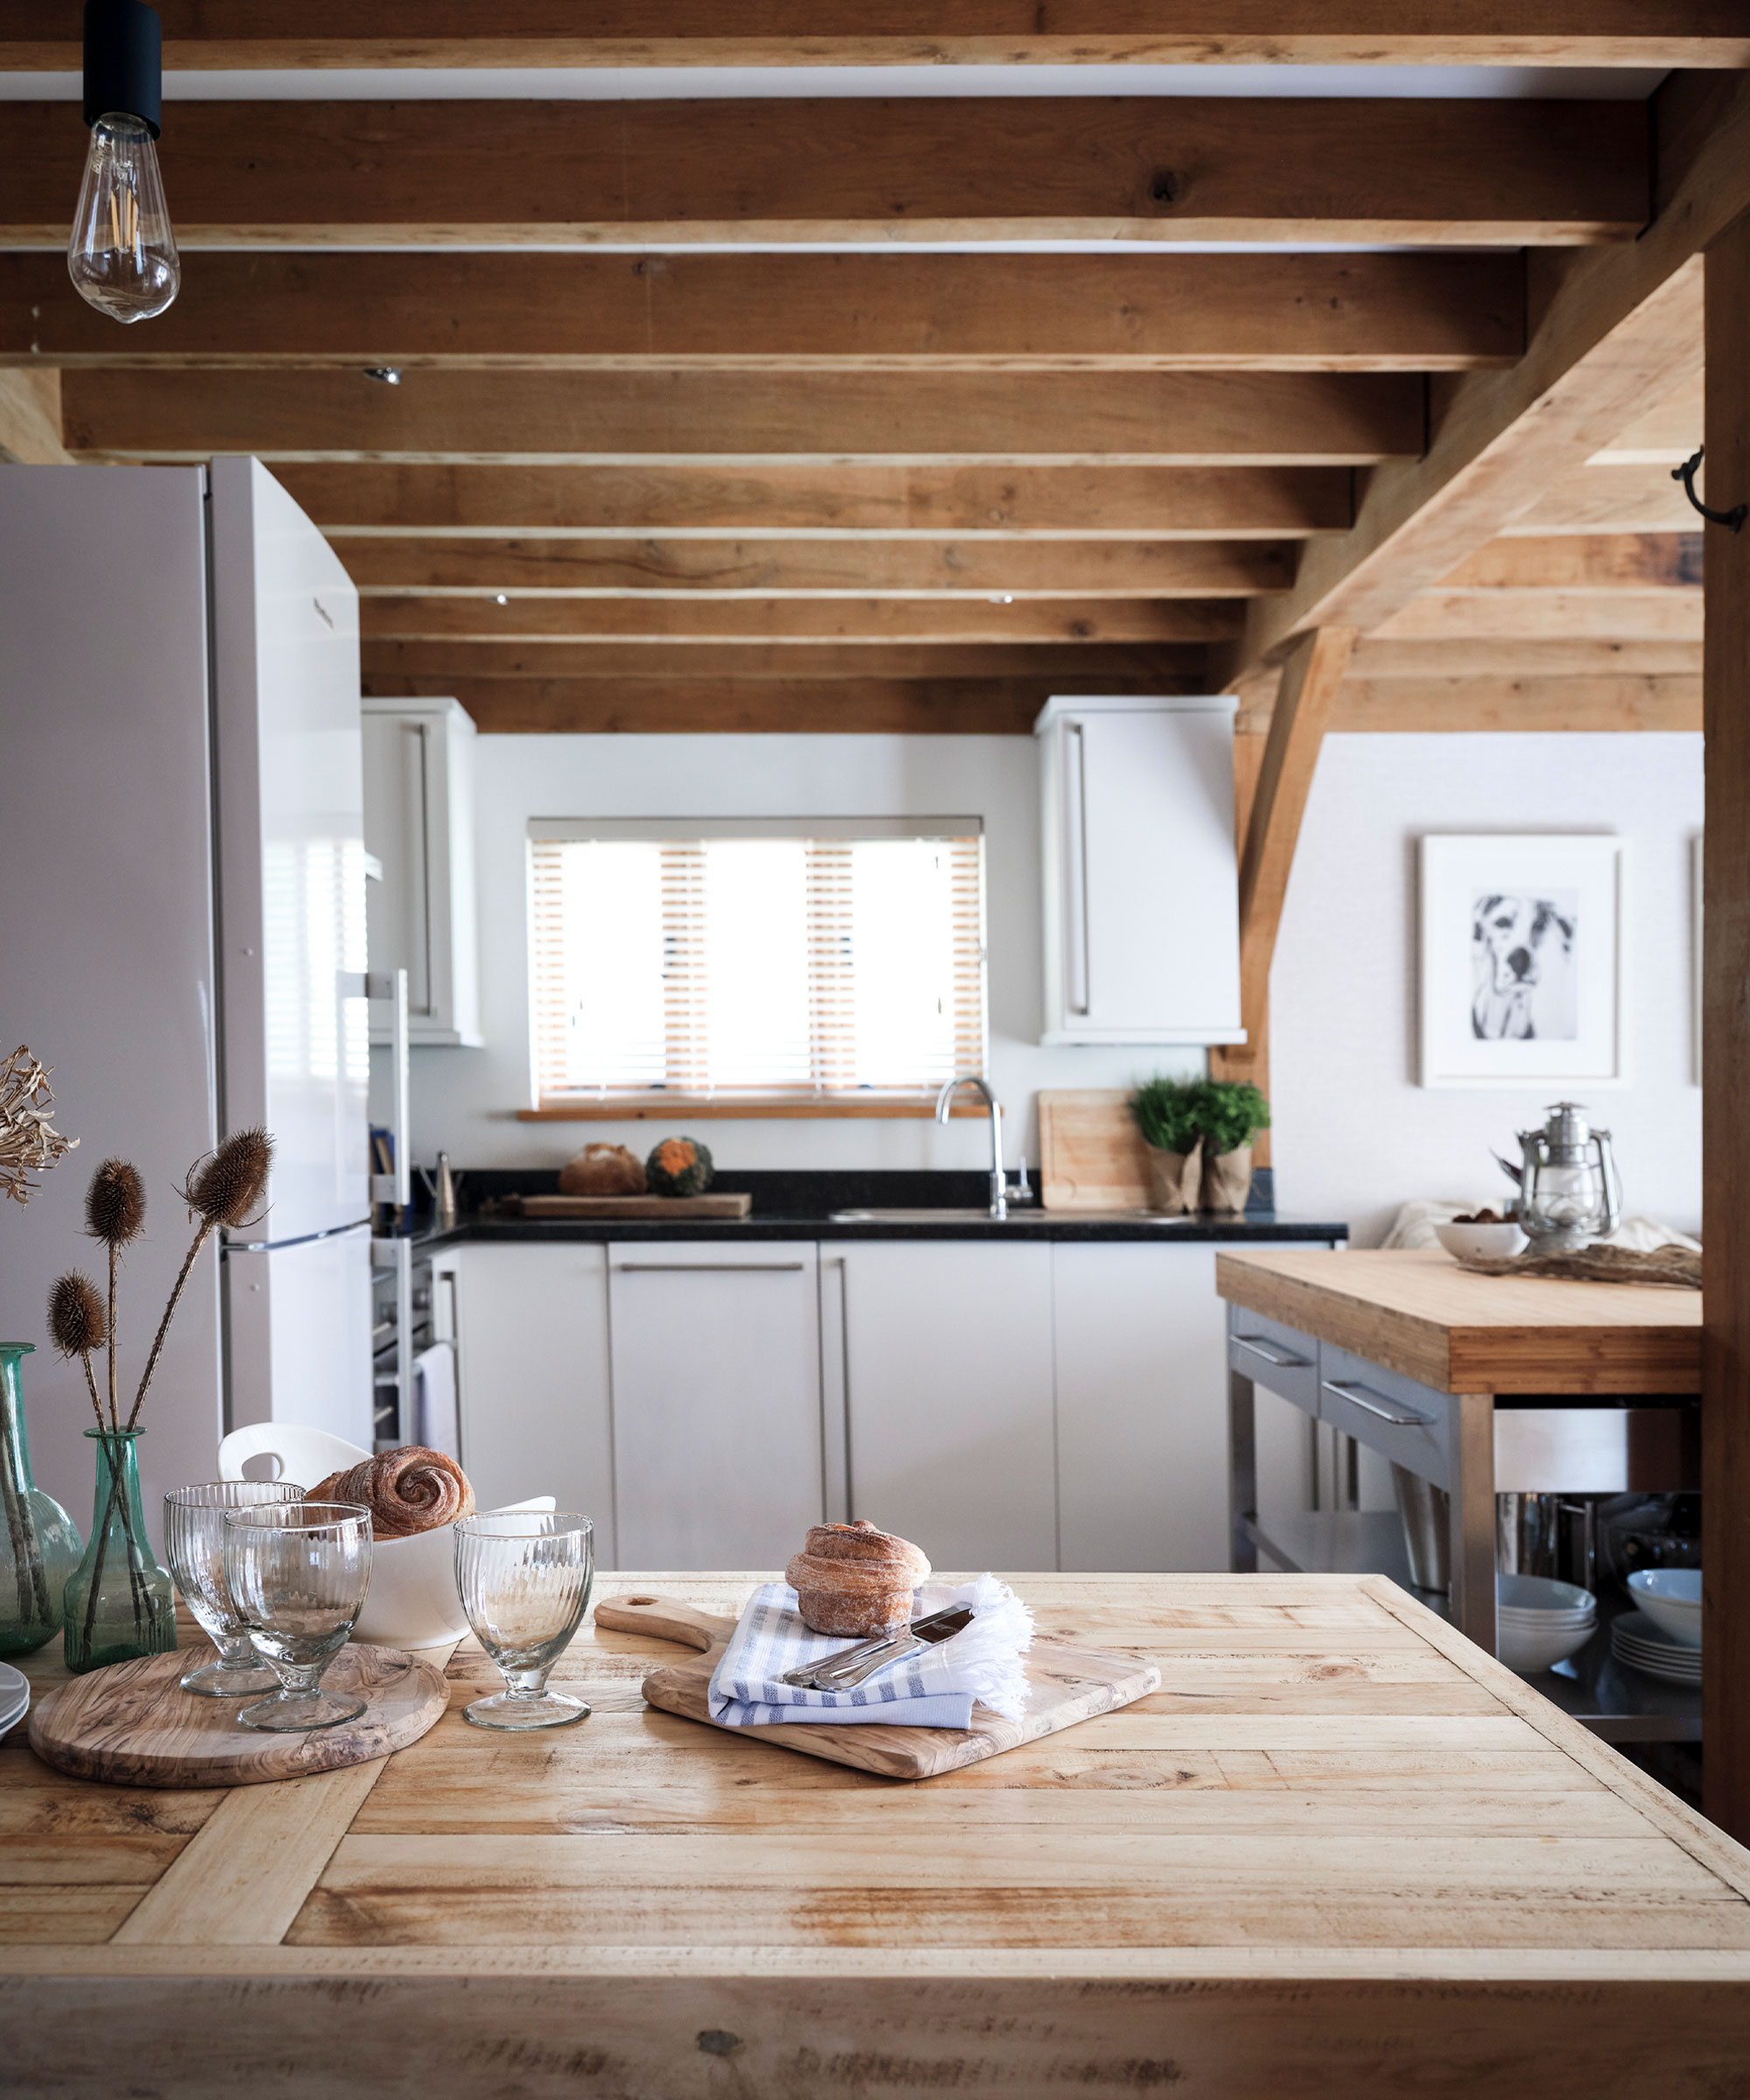 Pequeña cocina con vigas de madera, sobres, alacenas, ventana al fondo.